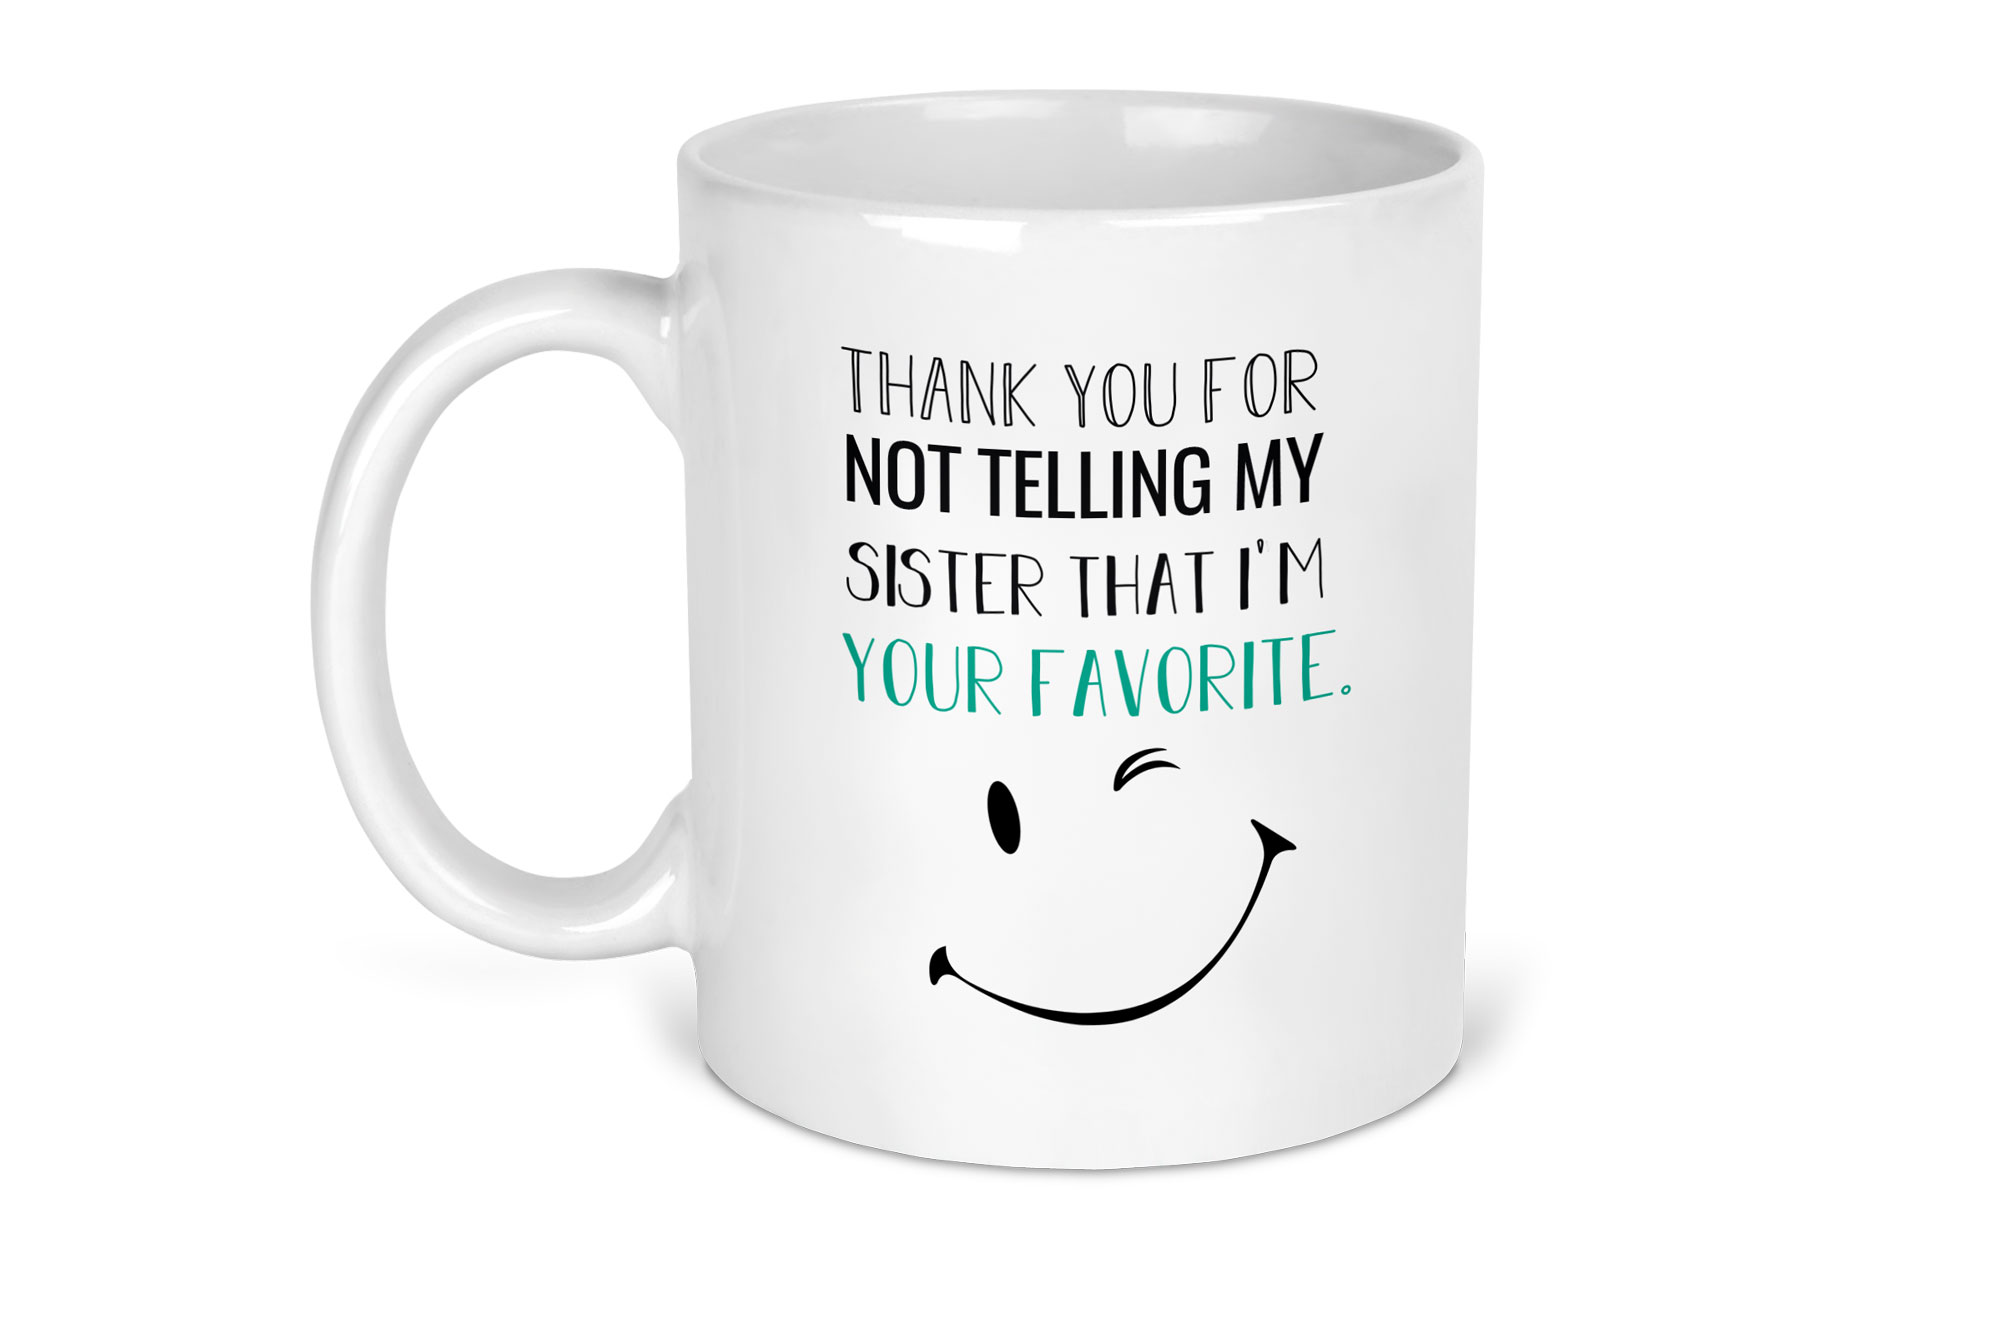 Favourite child novelty mug